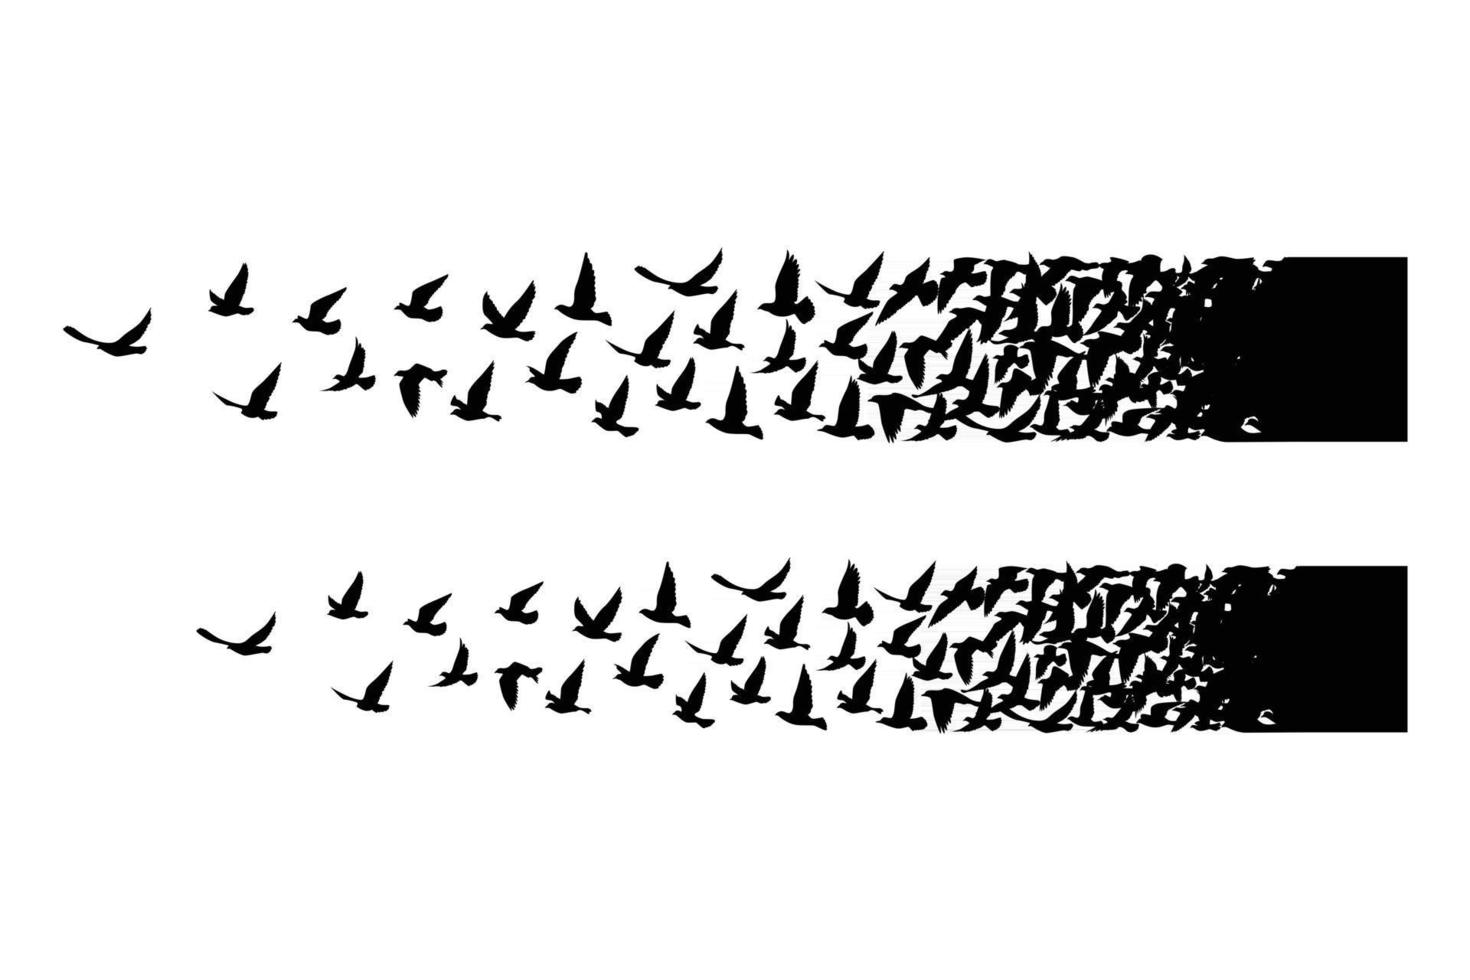 flygande fåglar silhuetter på vit bakgrund vektor illustration isolerade fågel flygande tatuering design